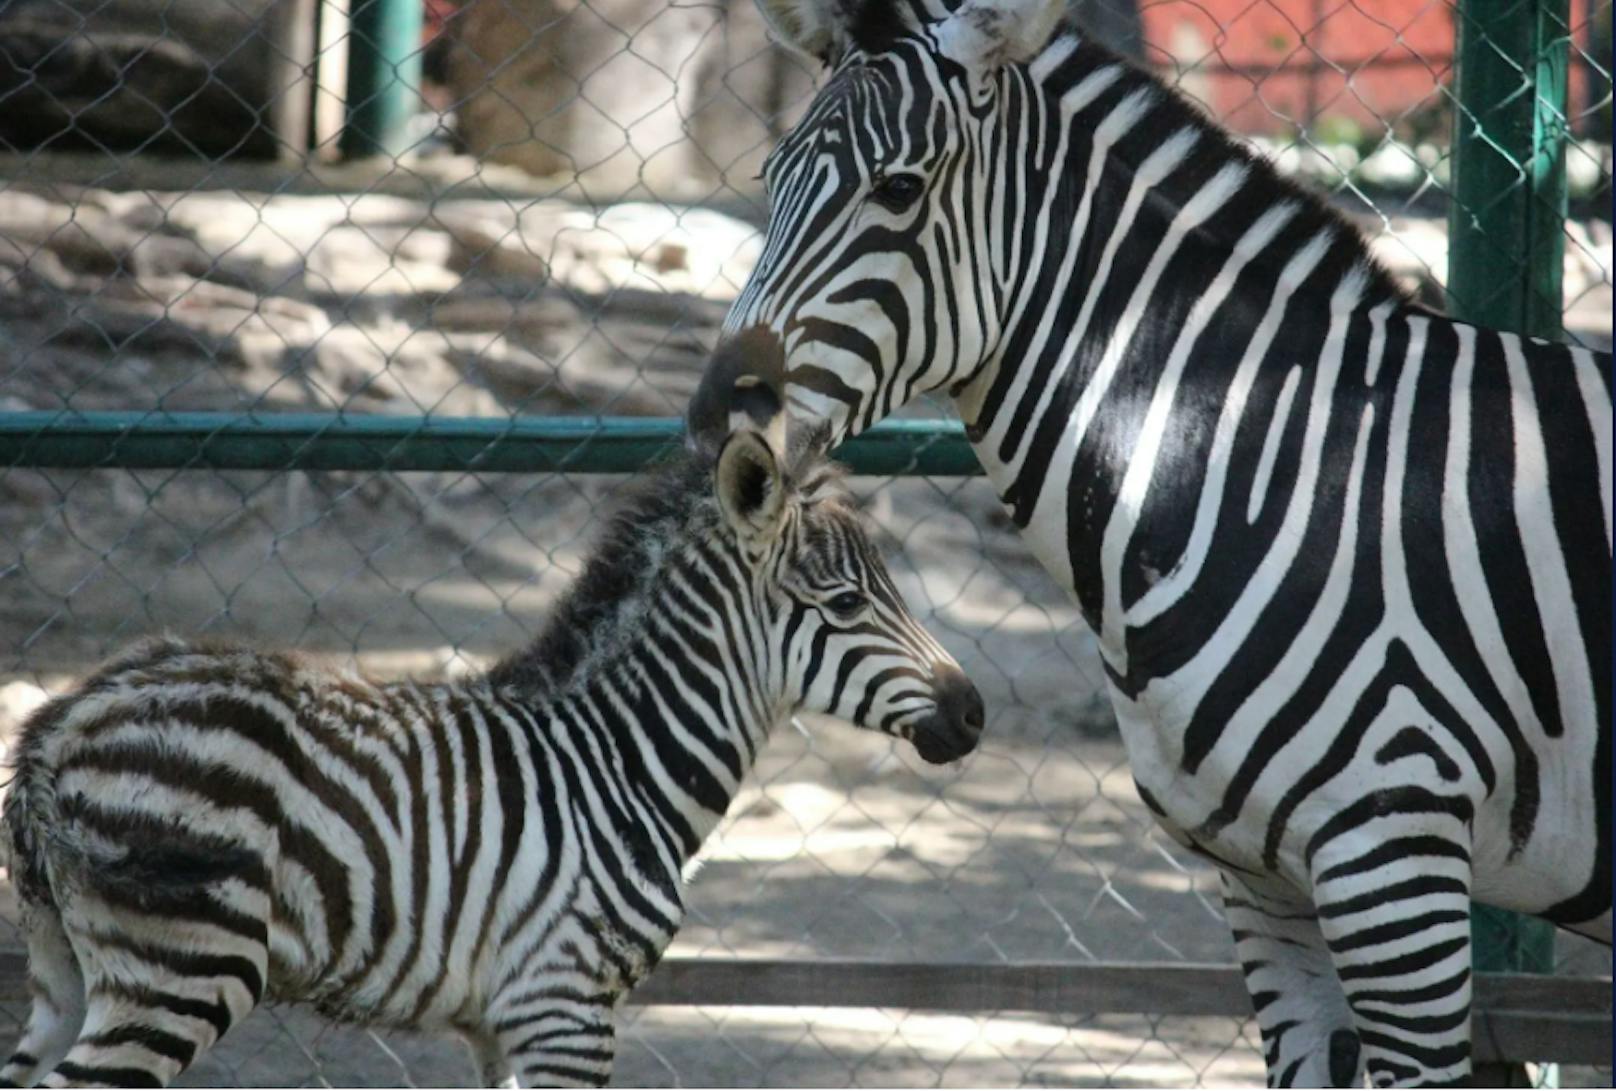 Ein mexikanischer Zoodirektor soll das Zebra des Zoos gegen Werkzeuge eingetauscht haben. Unklar ist, ob es sich dabei um eines der abgebildeten Zebras handelte.